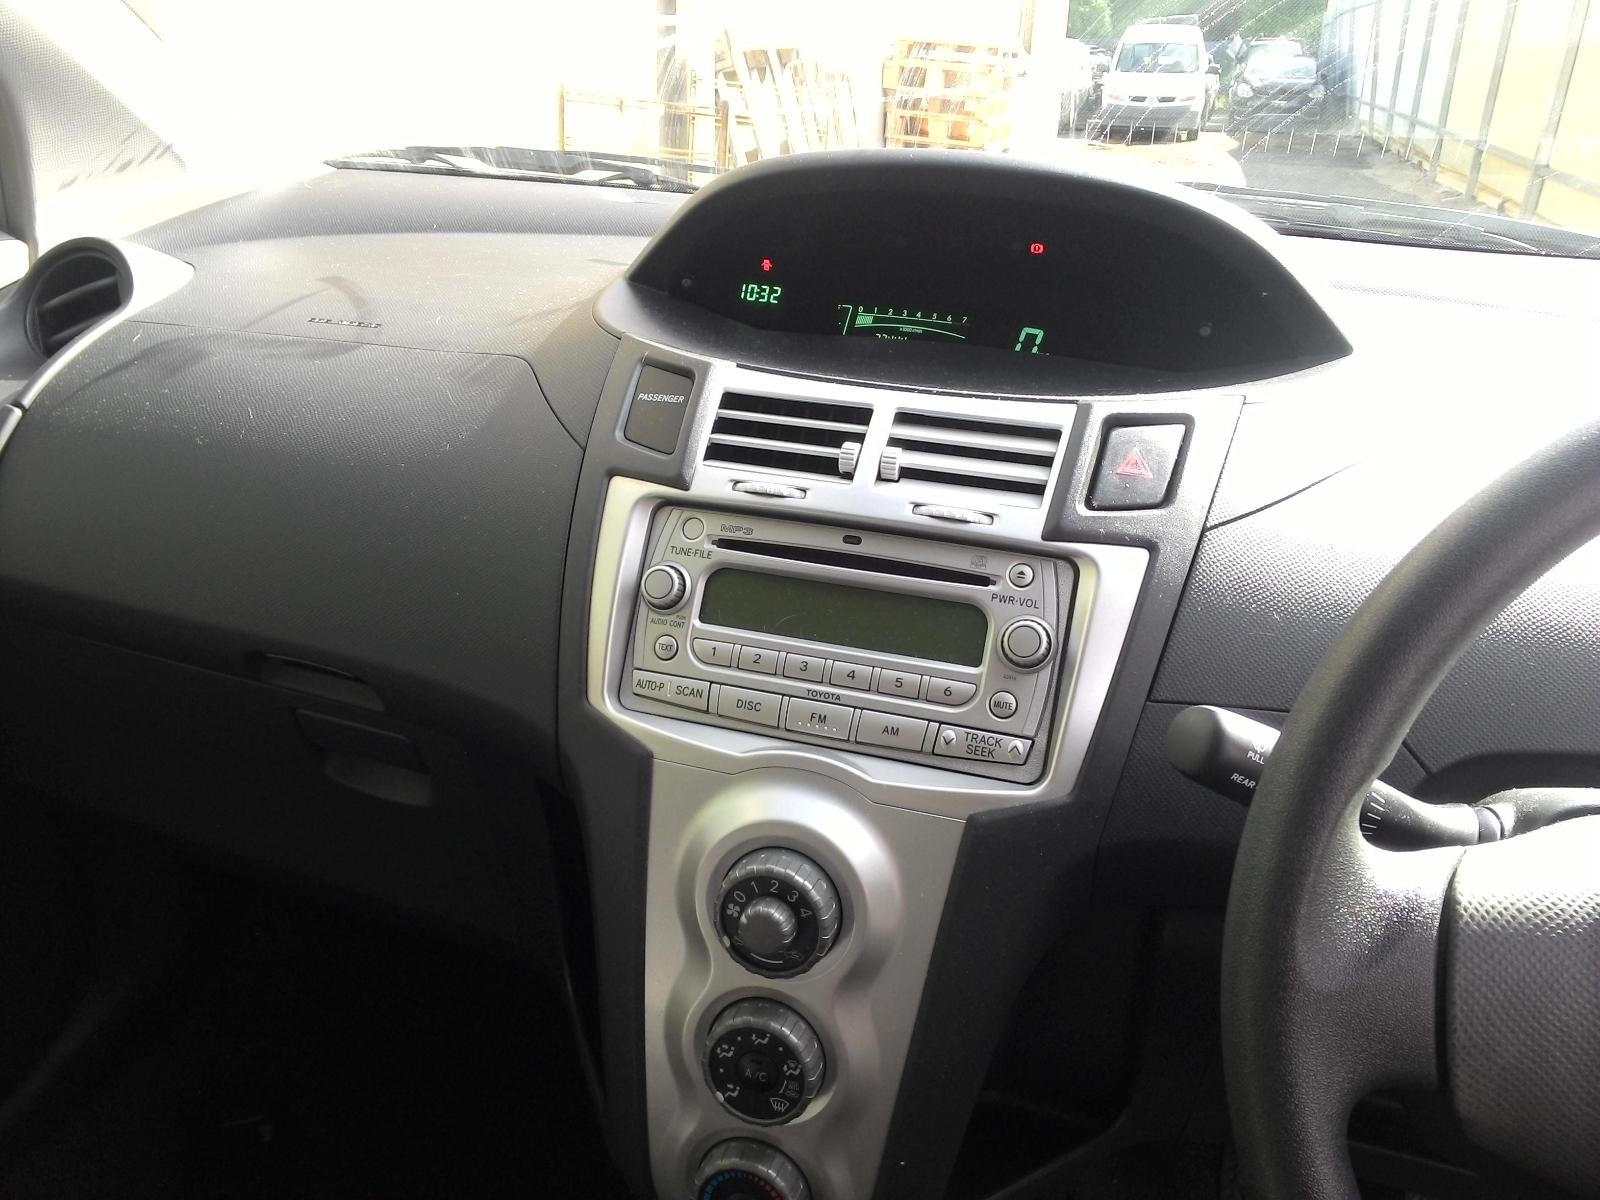 Toyota Yaris 2005-2012  Apple CarPlay and Android Auto Plug and Plug Head Unit Upgrade Kit